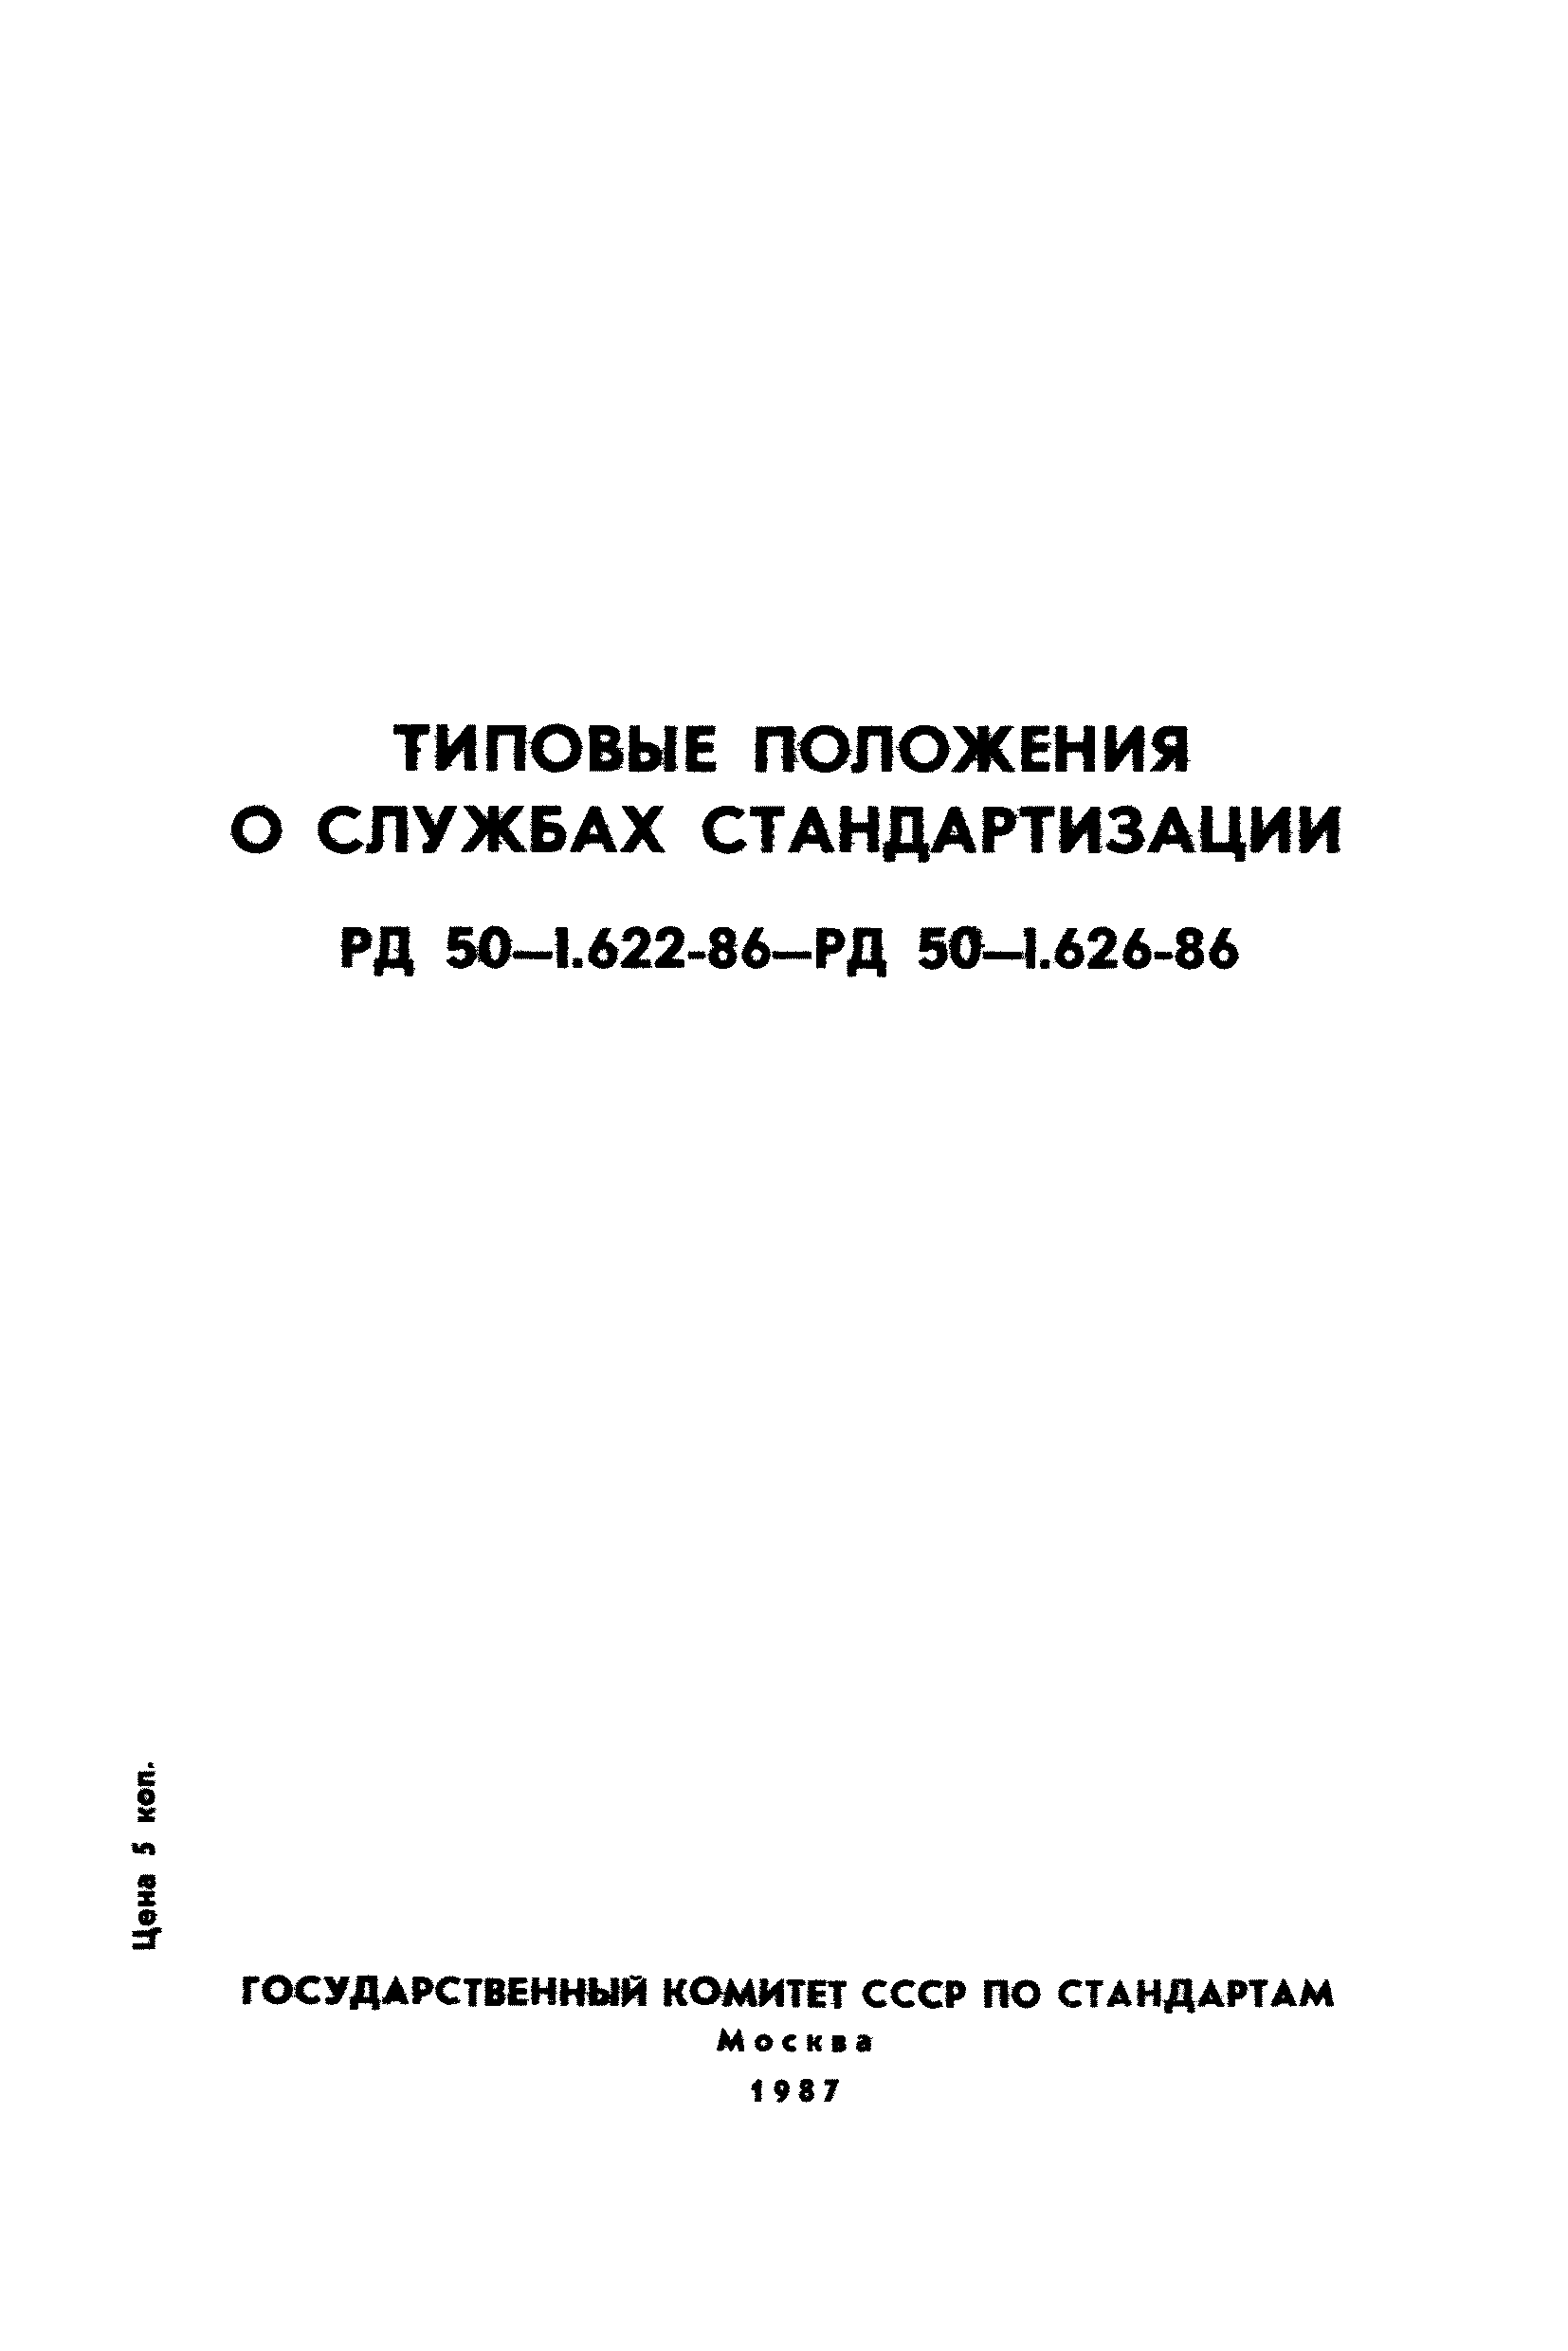 РД 50-1.622-86